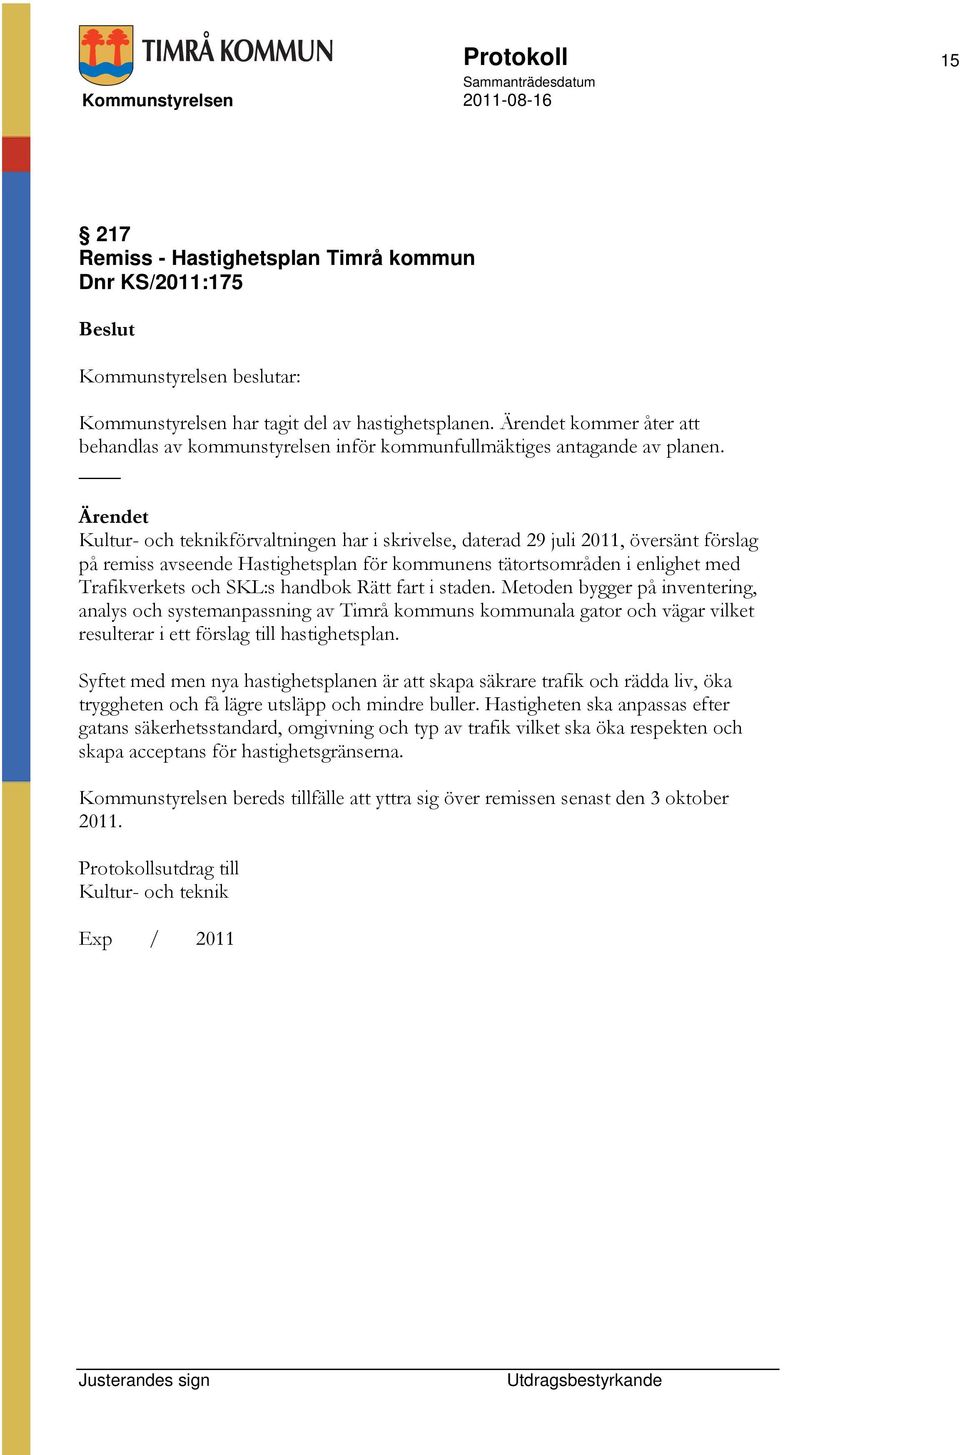 Kultur- och teknikförvaltningen har i skrivelse, daterad 29 juli 2011, översänt förslag på remiss avseende Hastighetsplan för kommunens tätortsområden i enlighet med Trafikverkets och SKL:s handbok